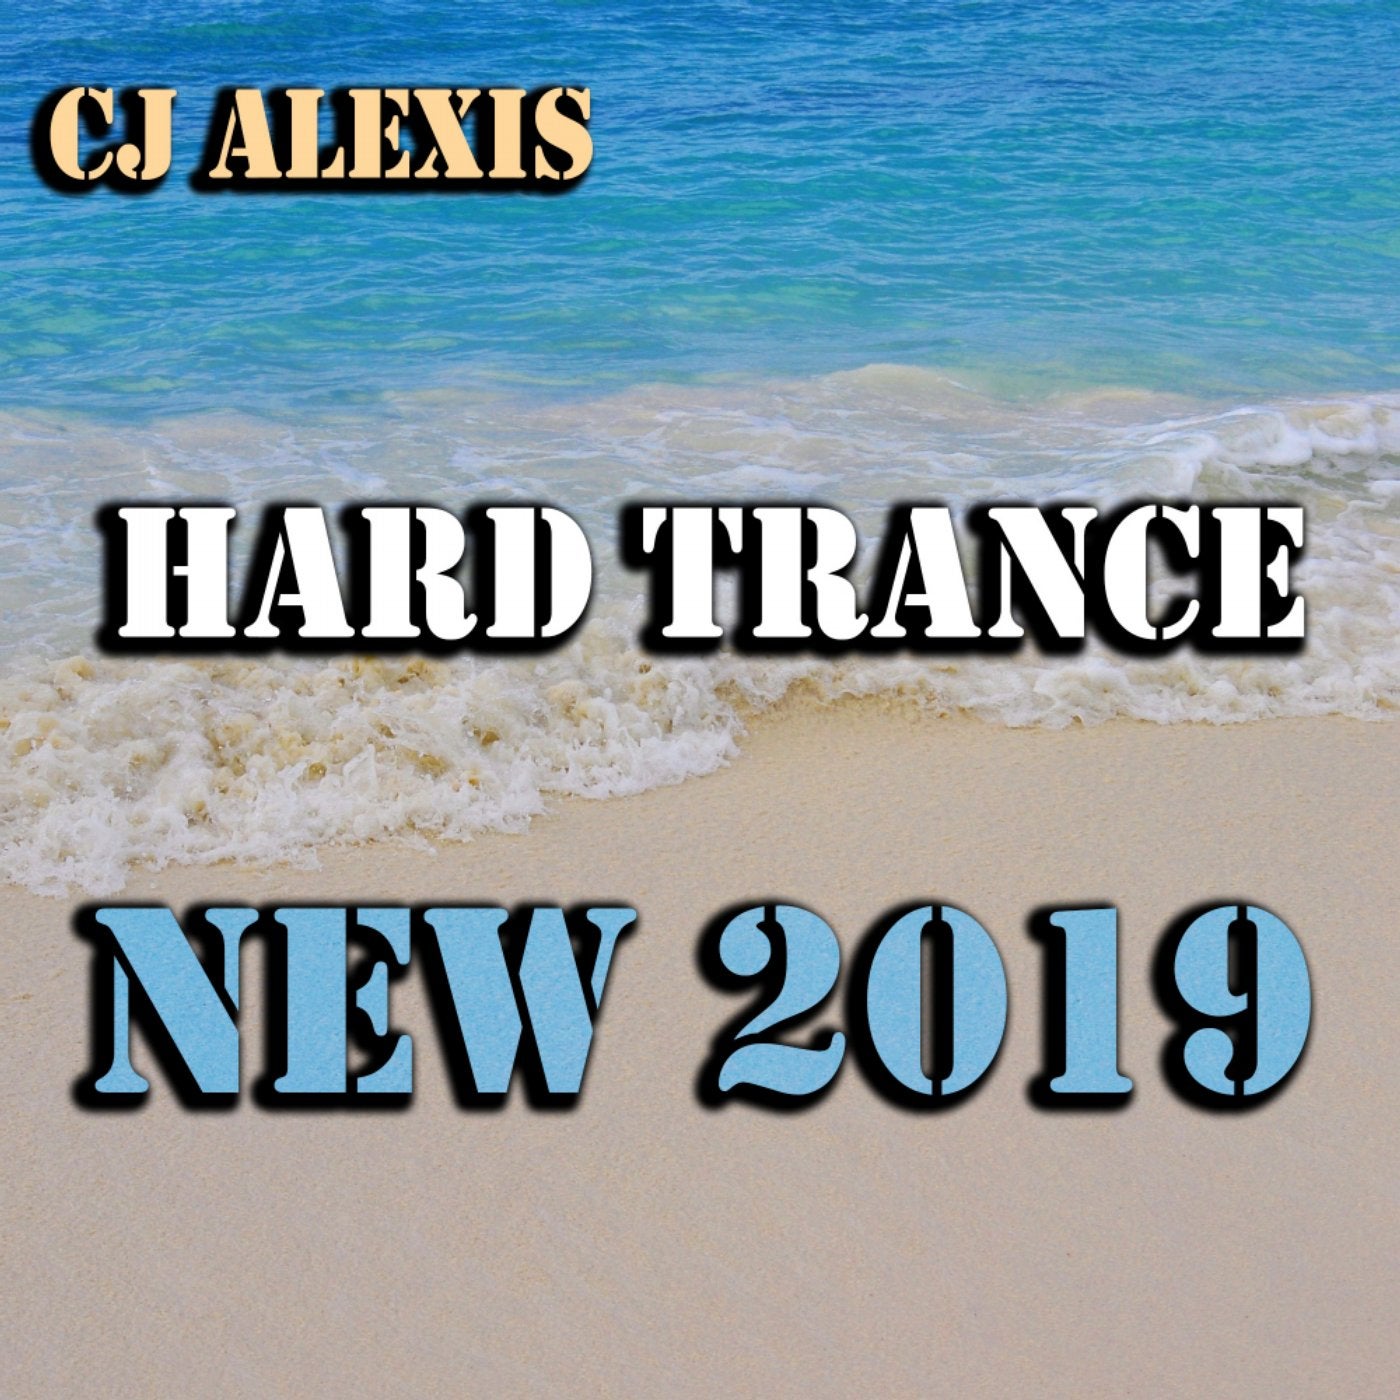 Hard Trance New 2019